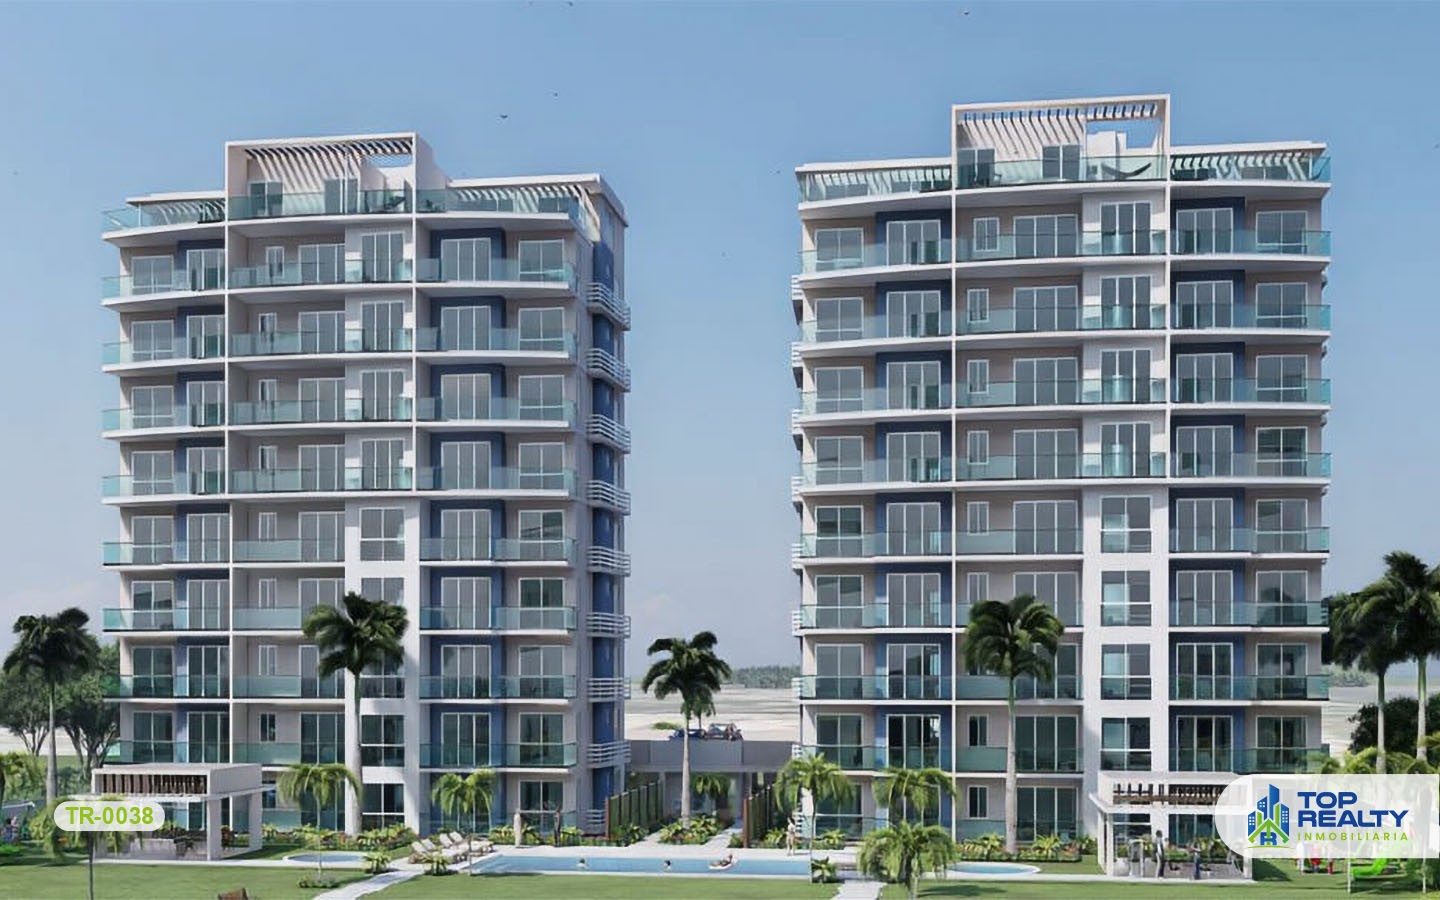 apartamentos - TR-0038: Apartamentos frente al mar y playa azul turquesa. 1